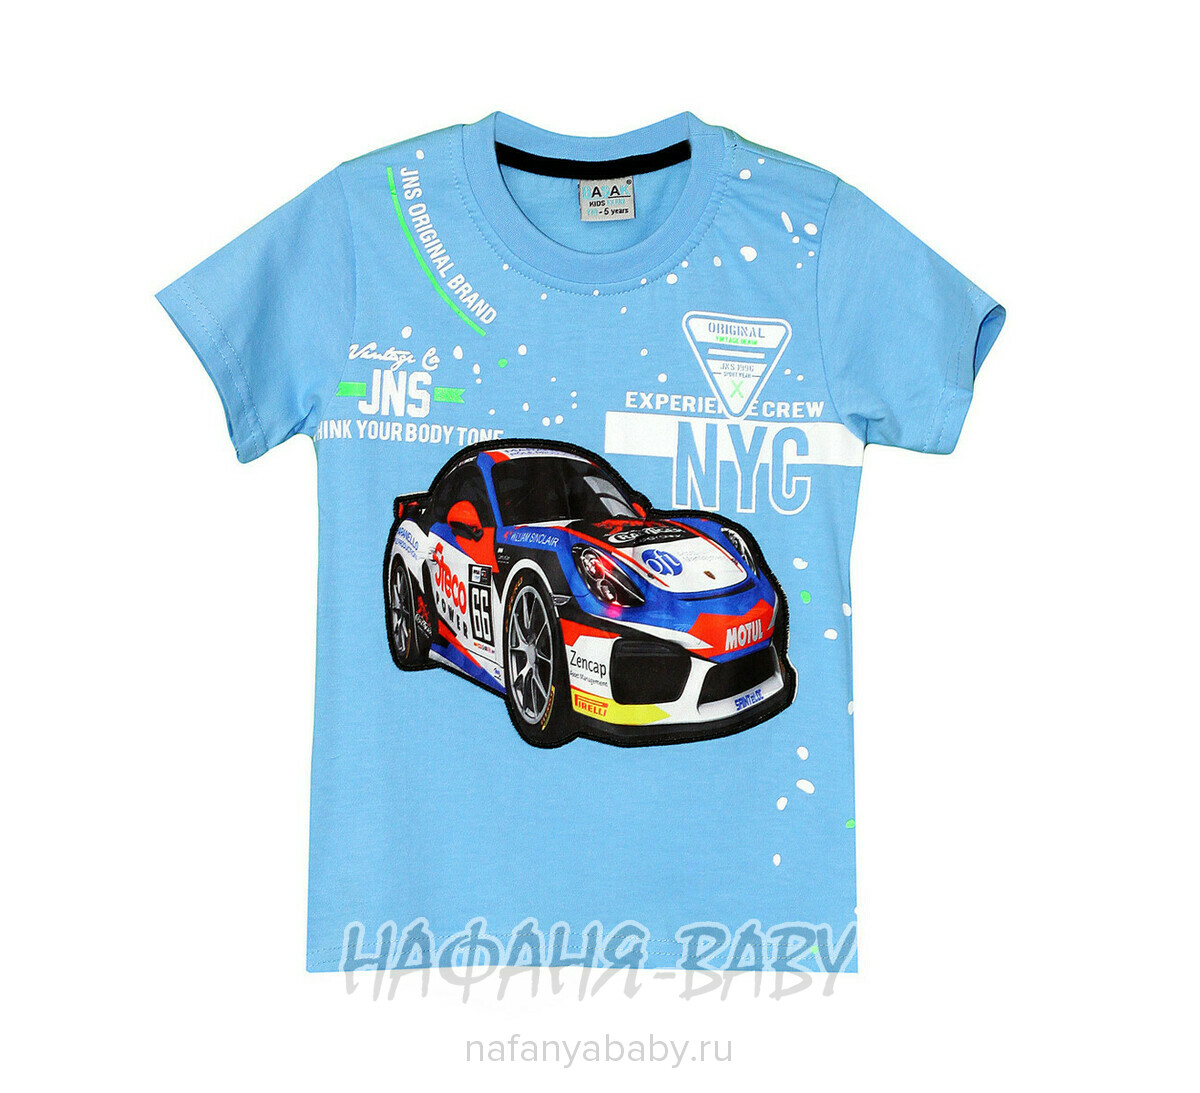 Детская футболка BASAK для мальчика, купить в интернет магазине Нафаня. арт: 2666.